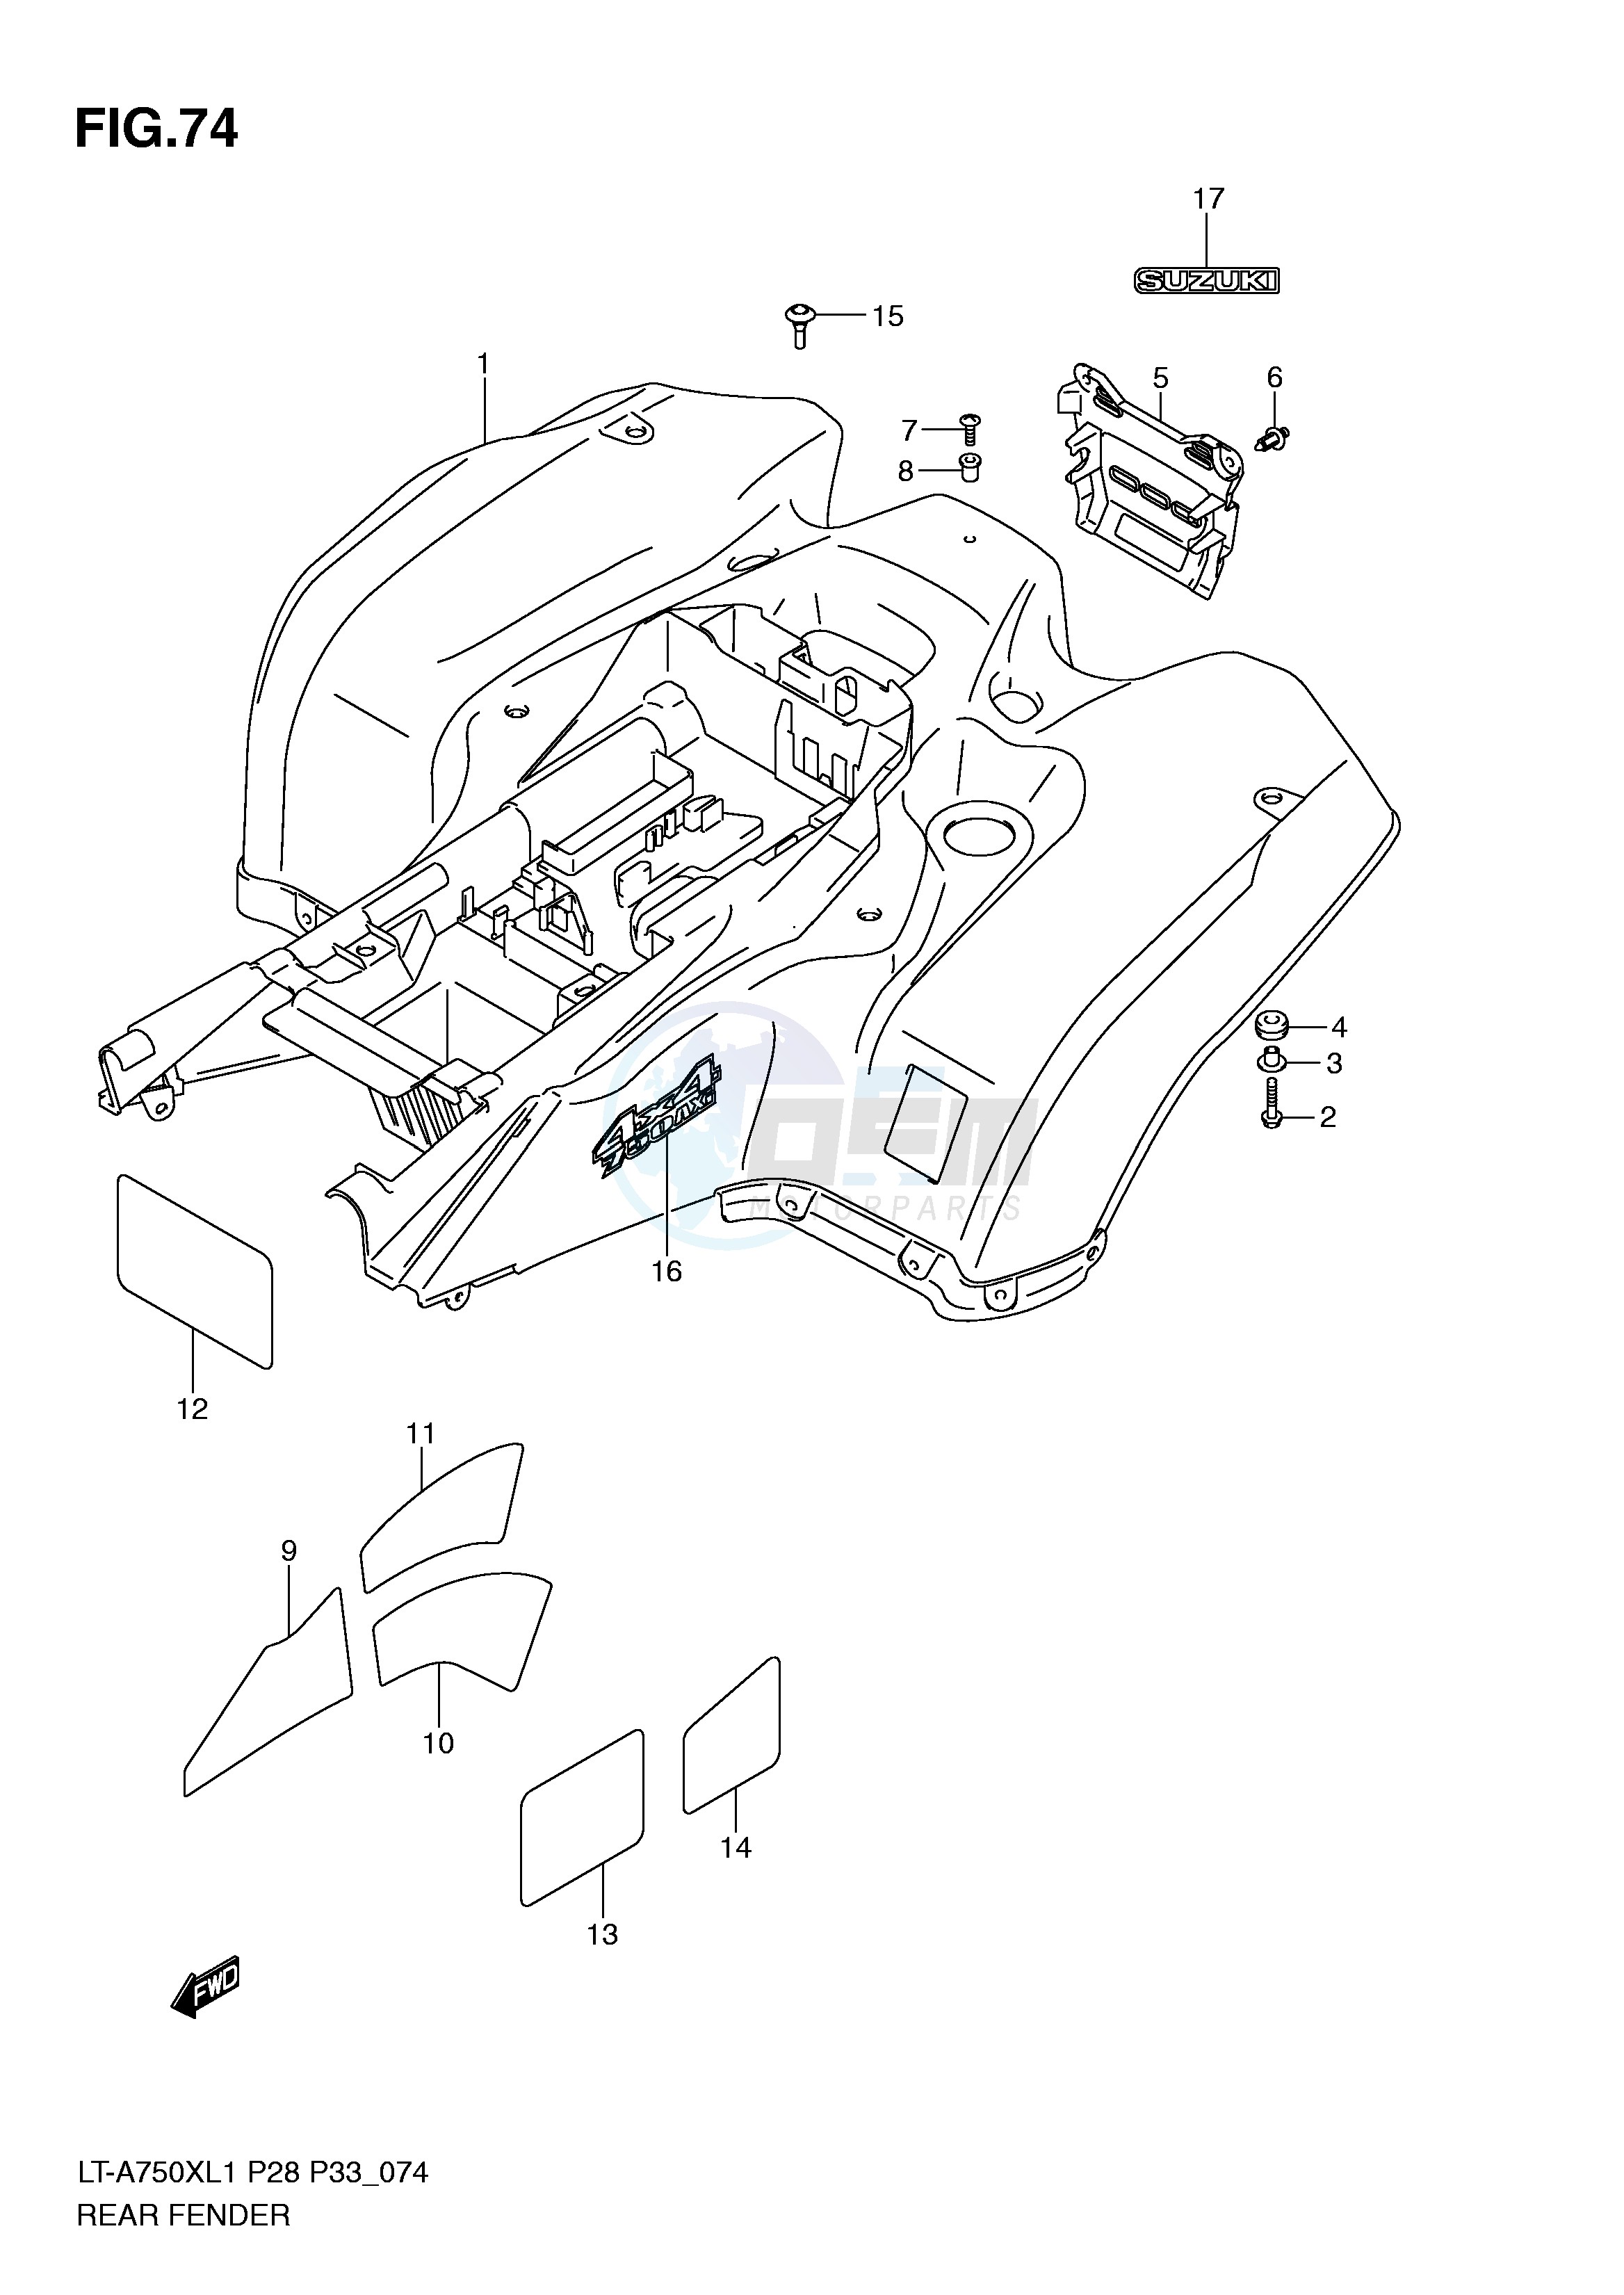 REAR FENDER (LT-A750XL1 P28) blueprint